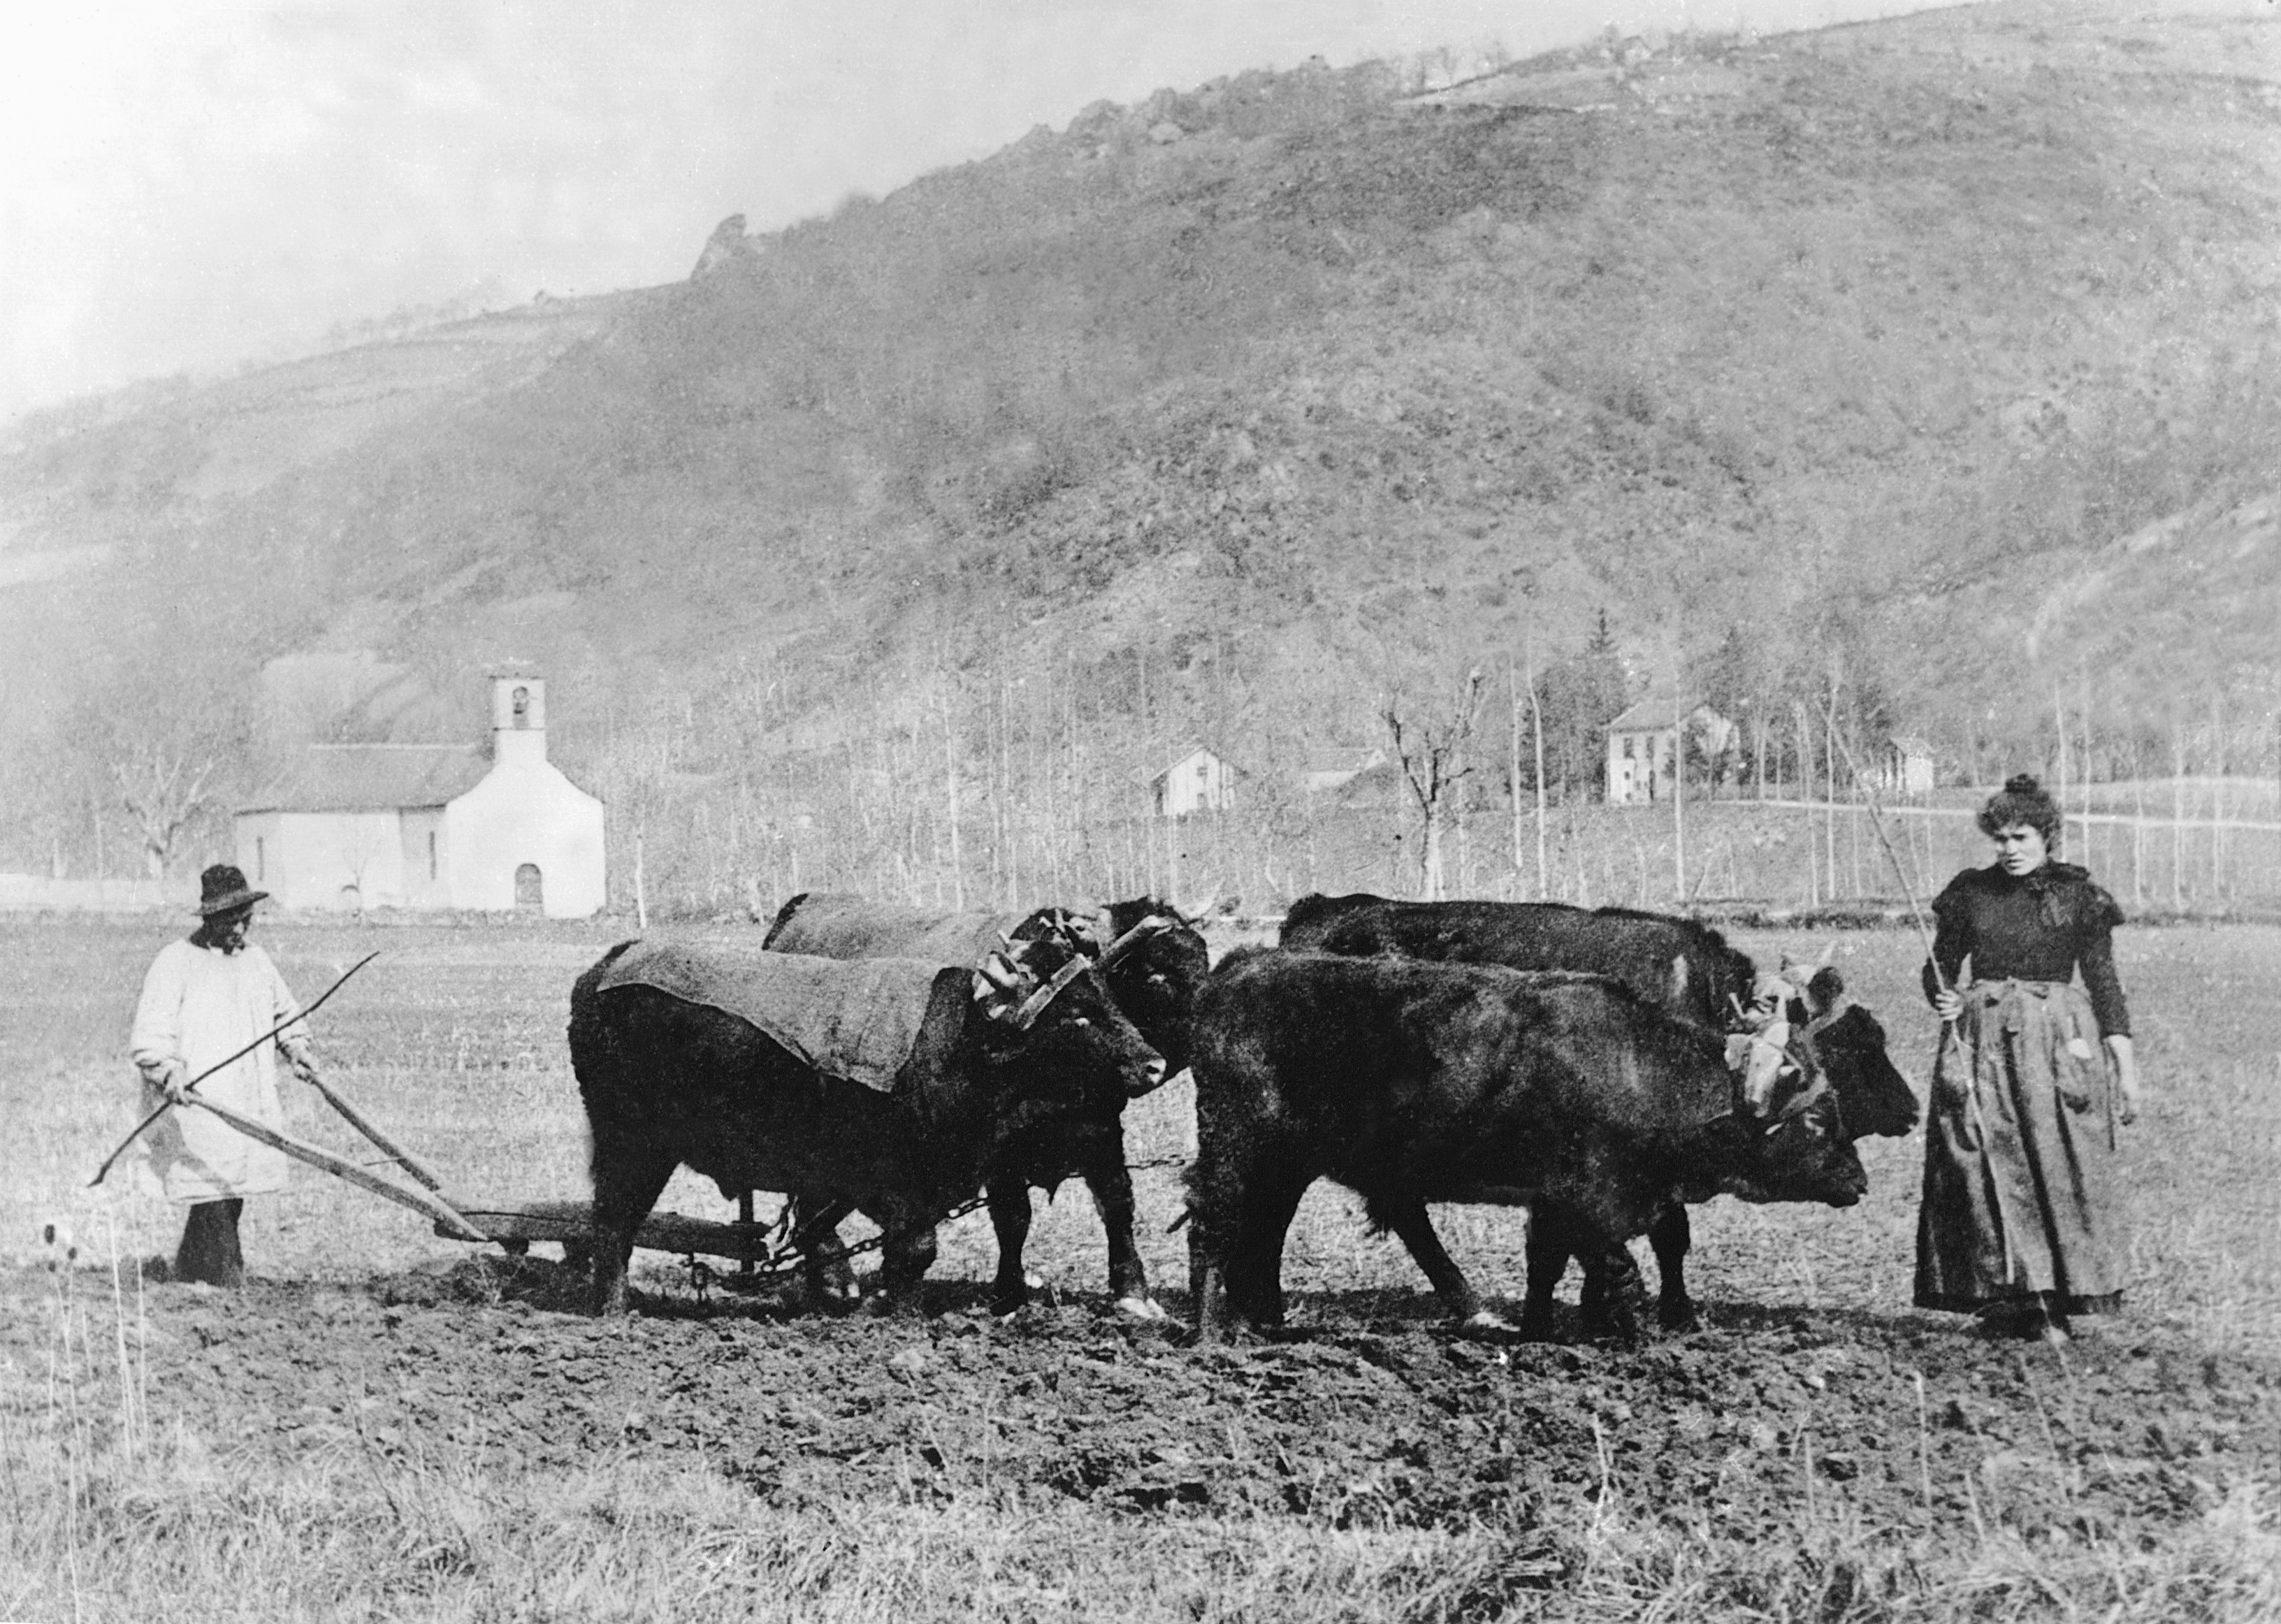  Labour (laur) avec une charrue Dombasle et deux paires de bovidés (parelhs, prodèl) devant une chapelle (capèla) et une gare (gara), 1897